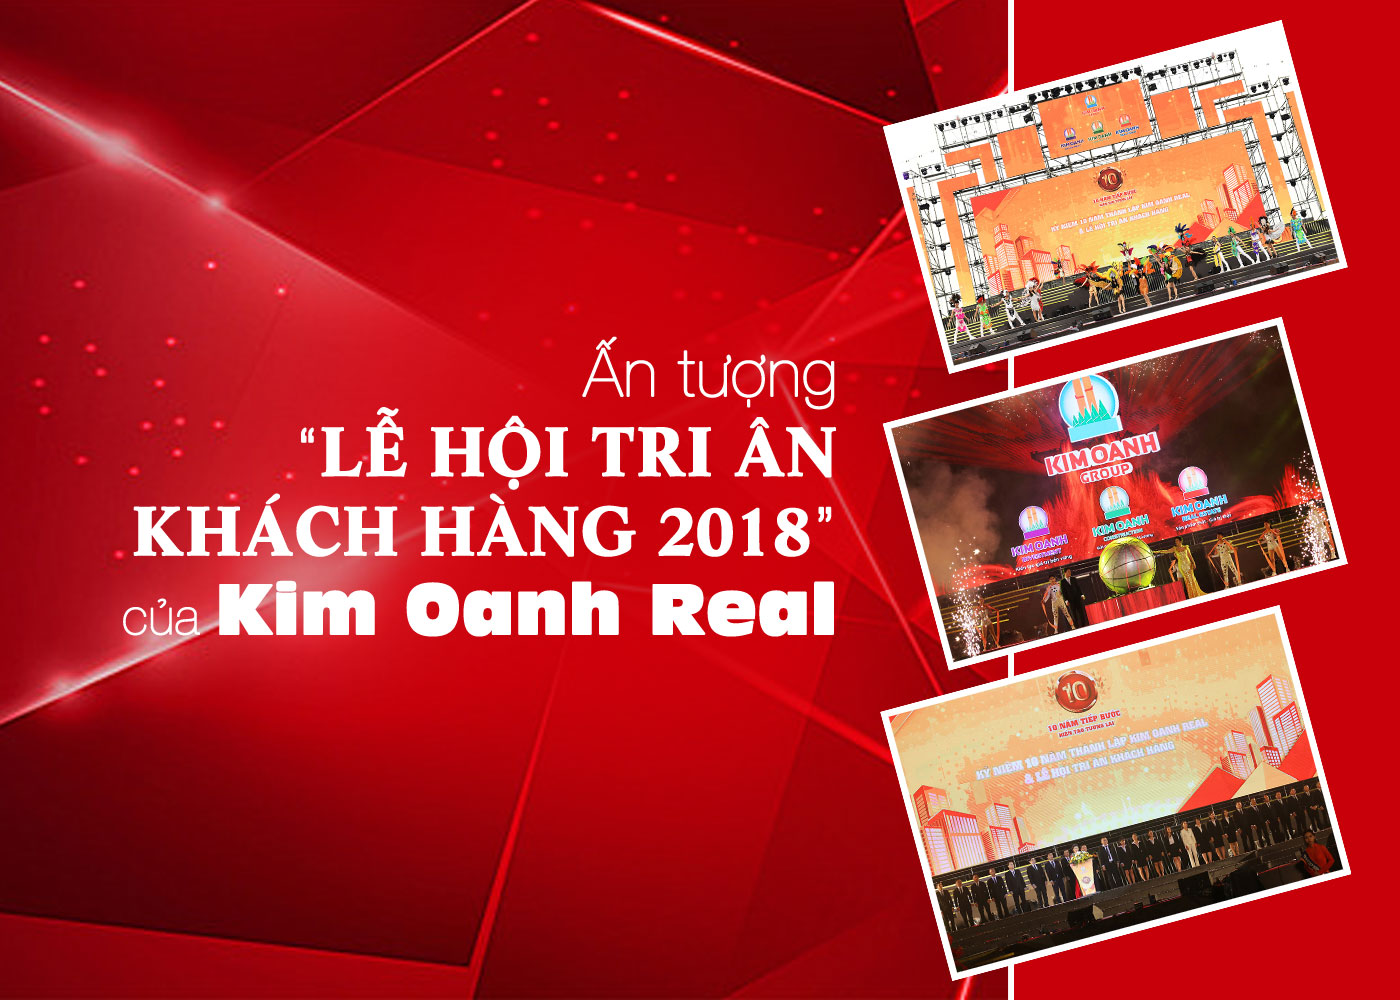 Ấn tượng Lễ hội tri ân khách hàng 2018 của Kim Oanh Real - Ảnh 1